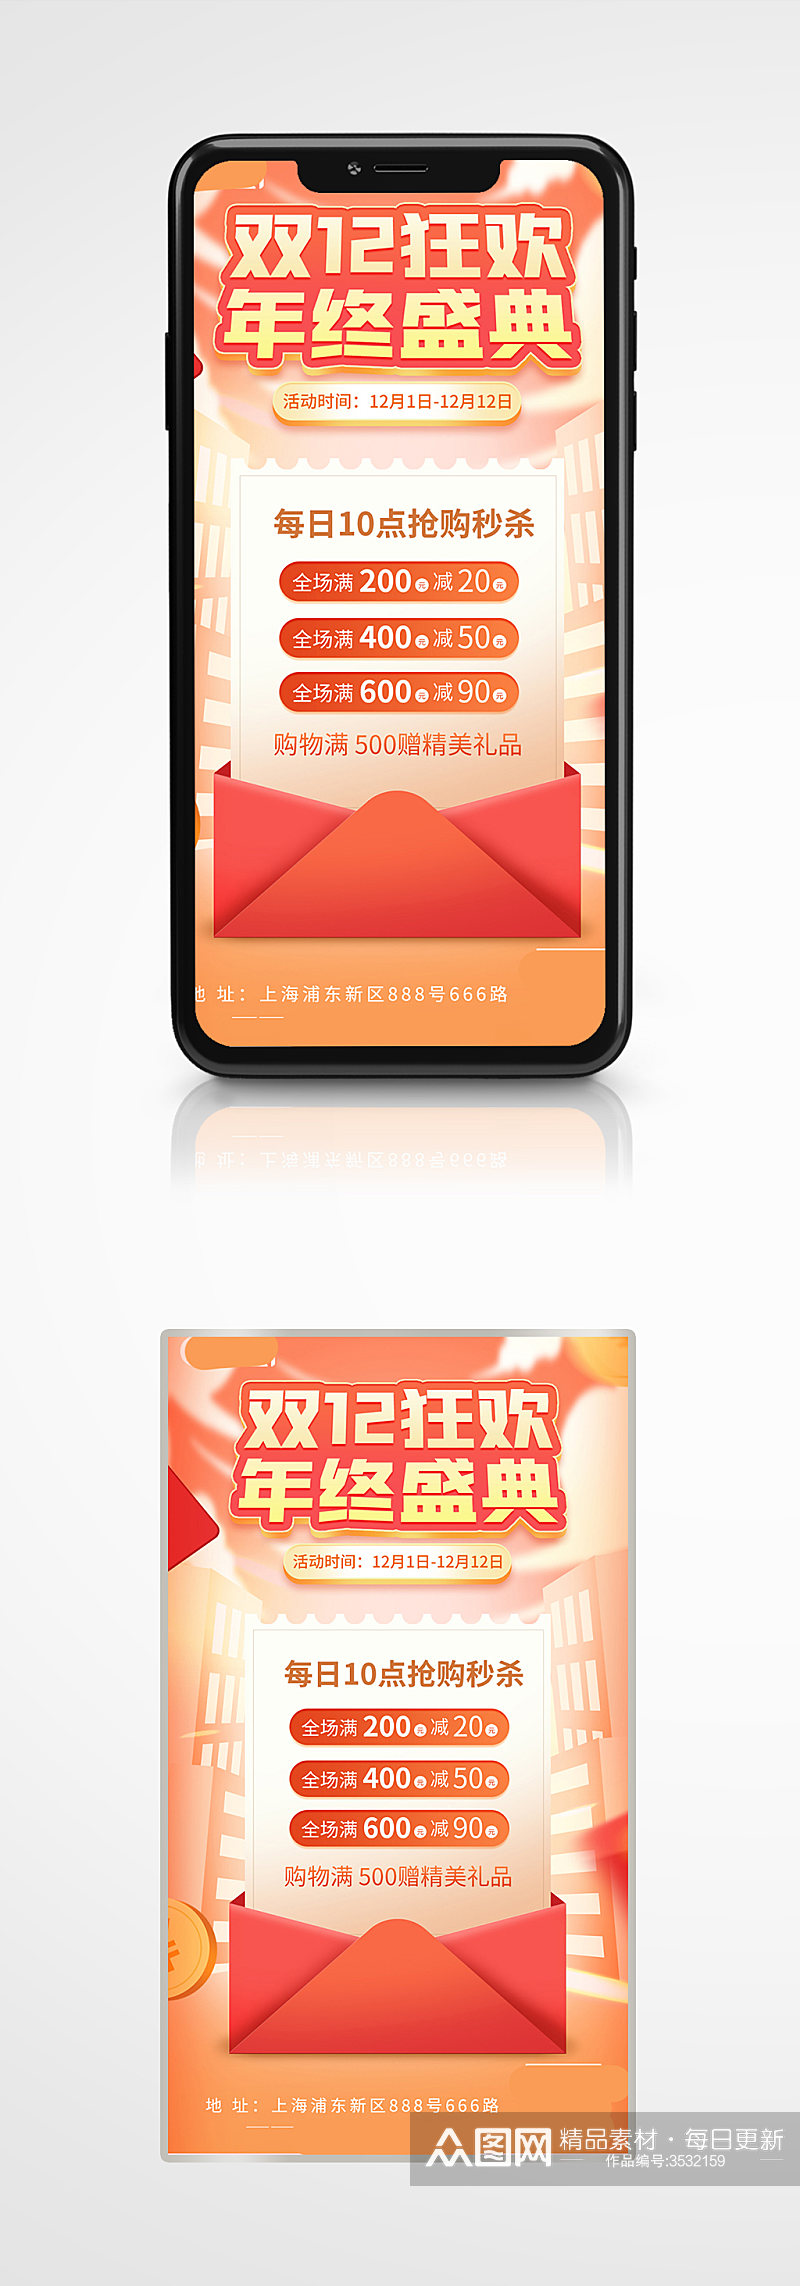 双十二促销手机海报营销橙色大促活动素材